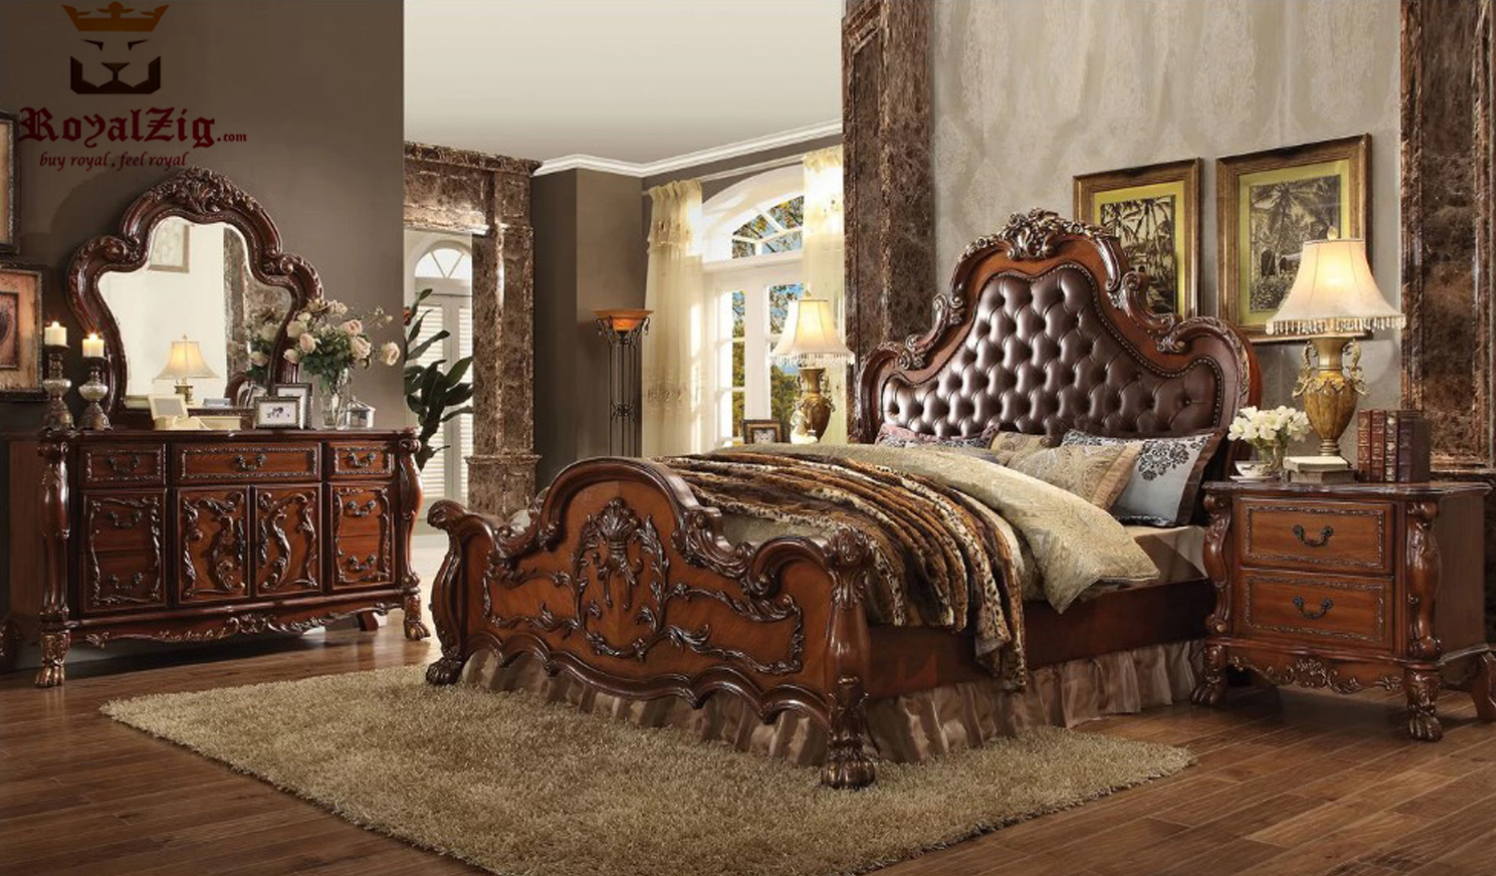 Royal Designer Furniture Online in India